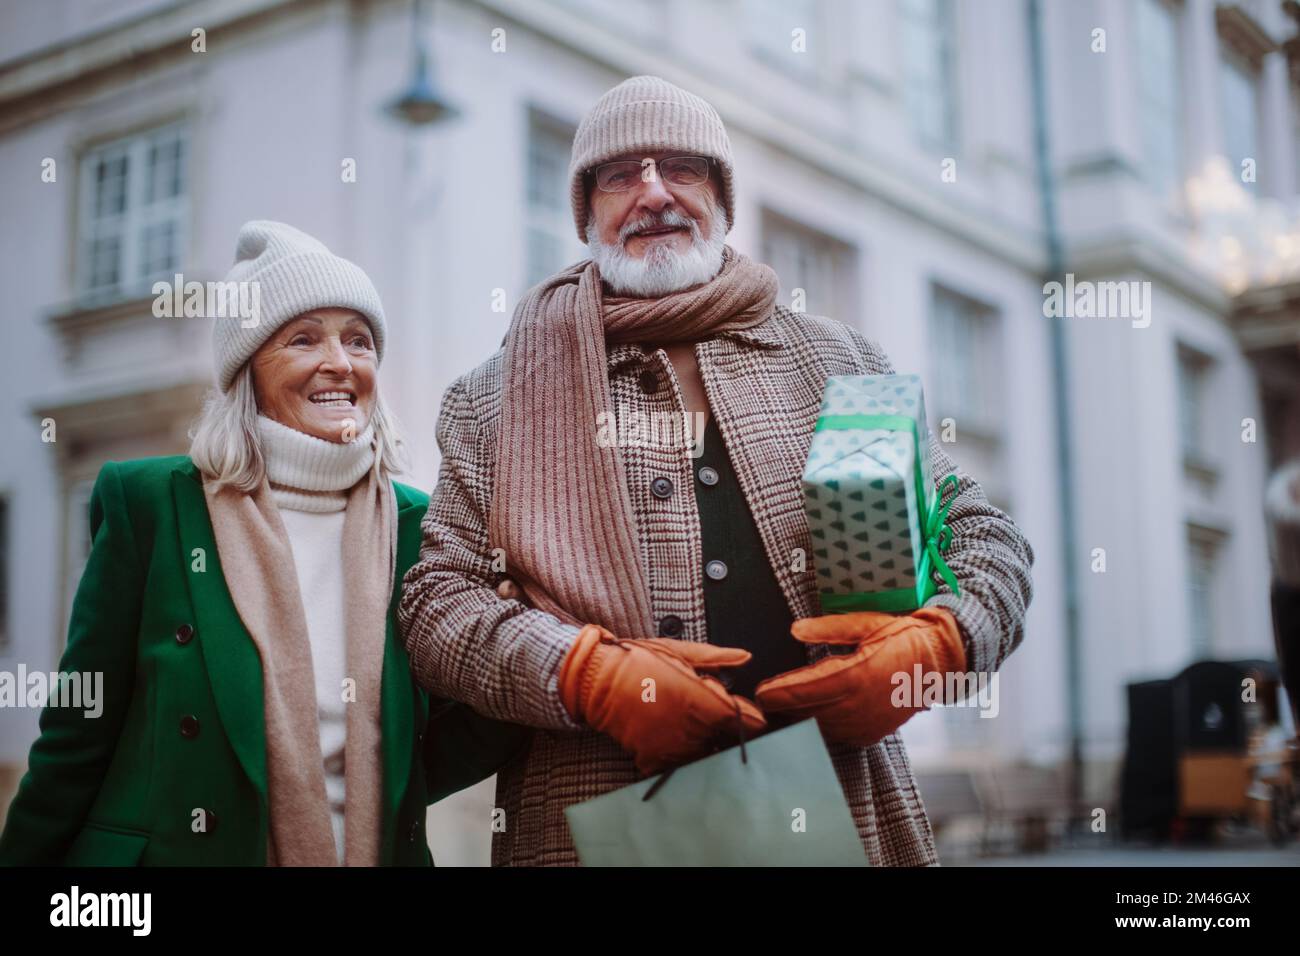 Happy senior couple enjoying christmas market, buying gifts. Stock Photo